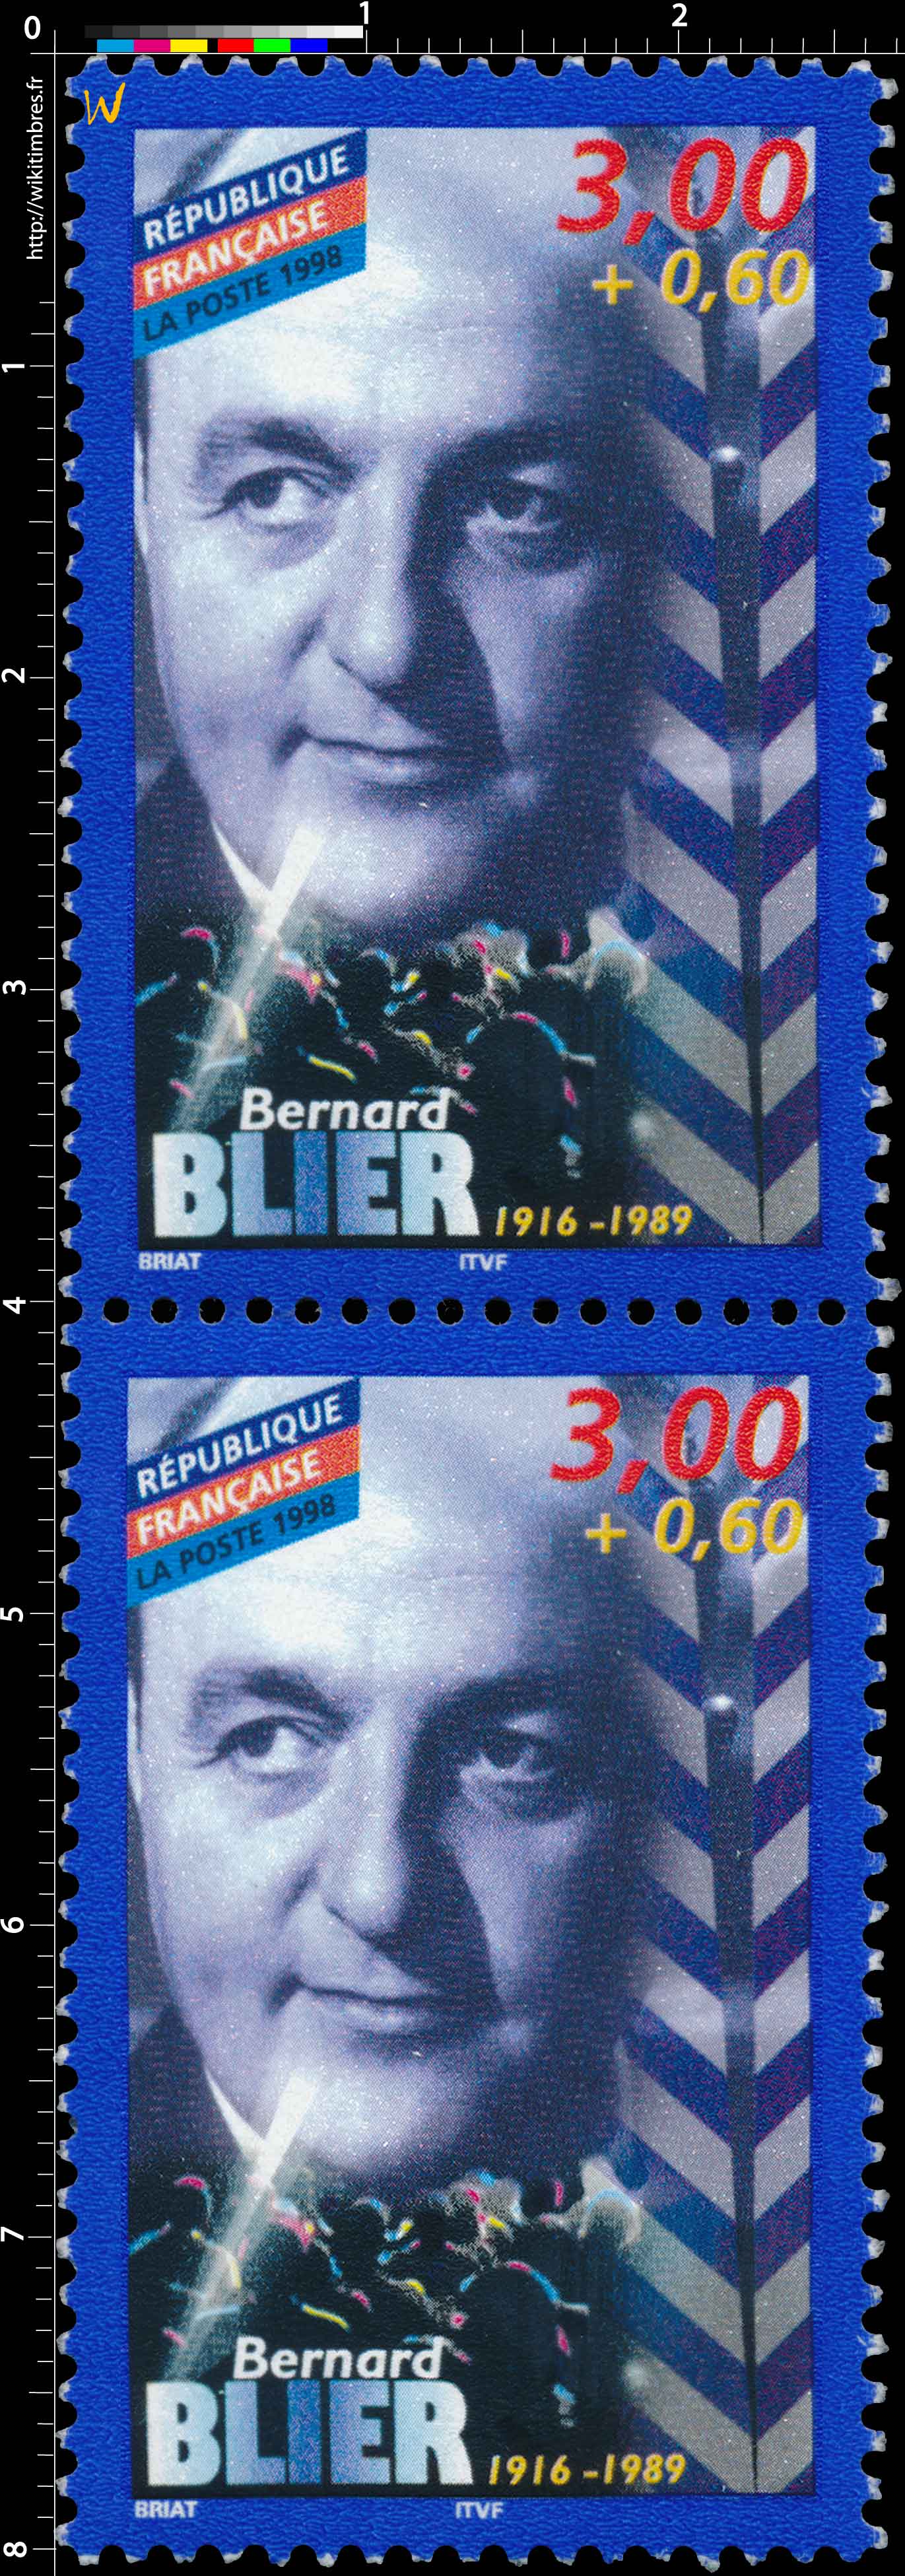 1998 Bernard BLIER 1916-1989